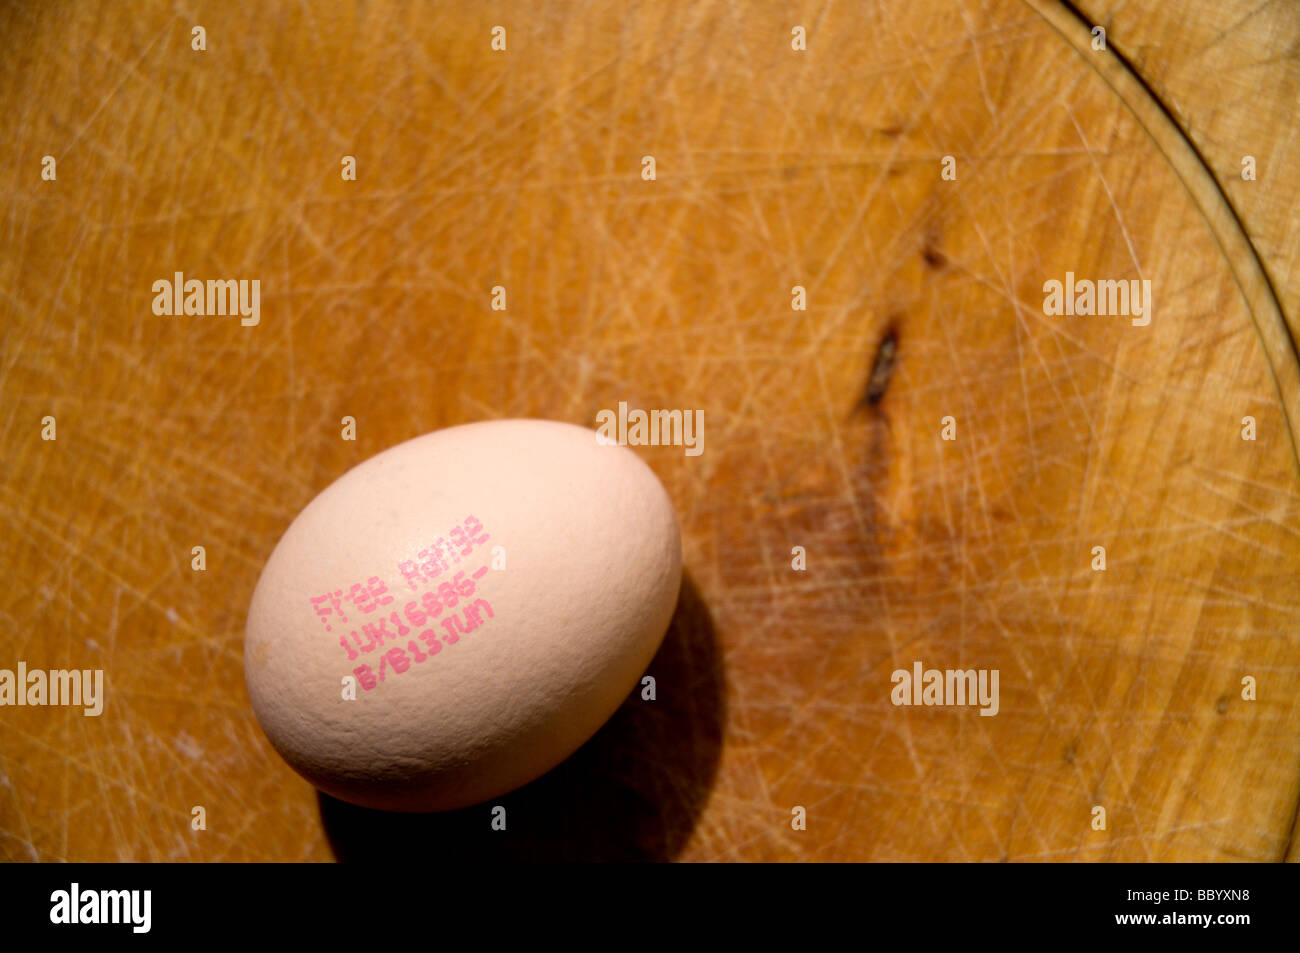 Un intervallo libero uovo su un tagliere di legno. Data di scadenza può essere visto sull'uovo. Foto Stock